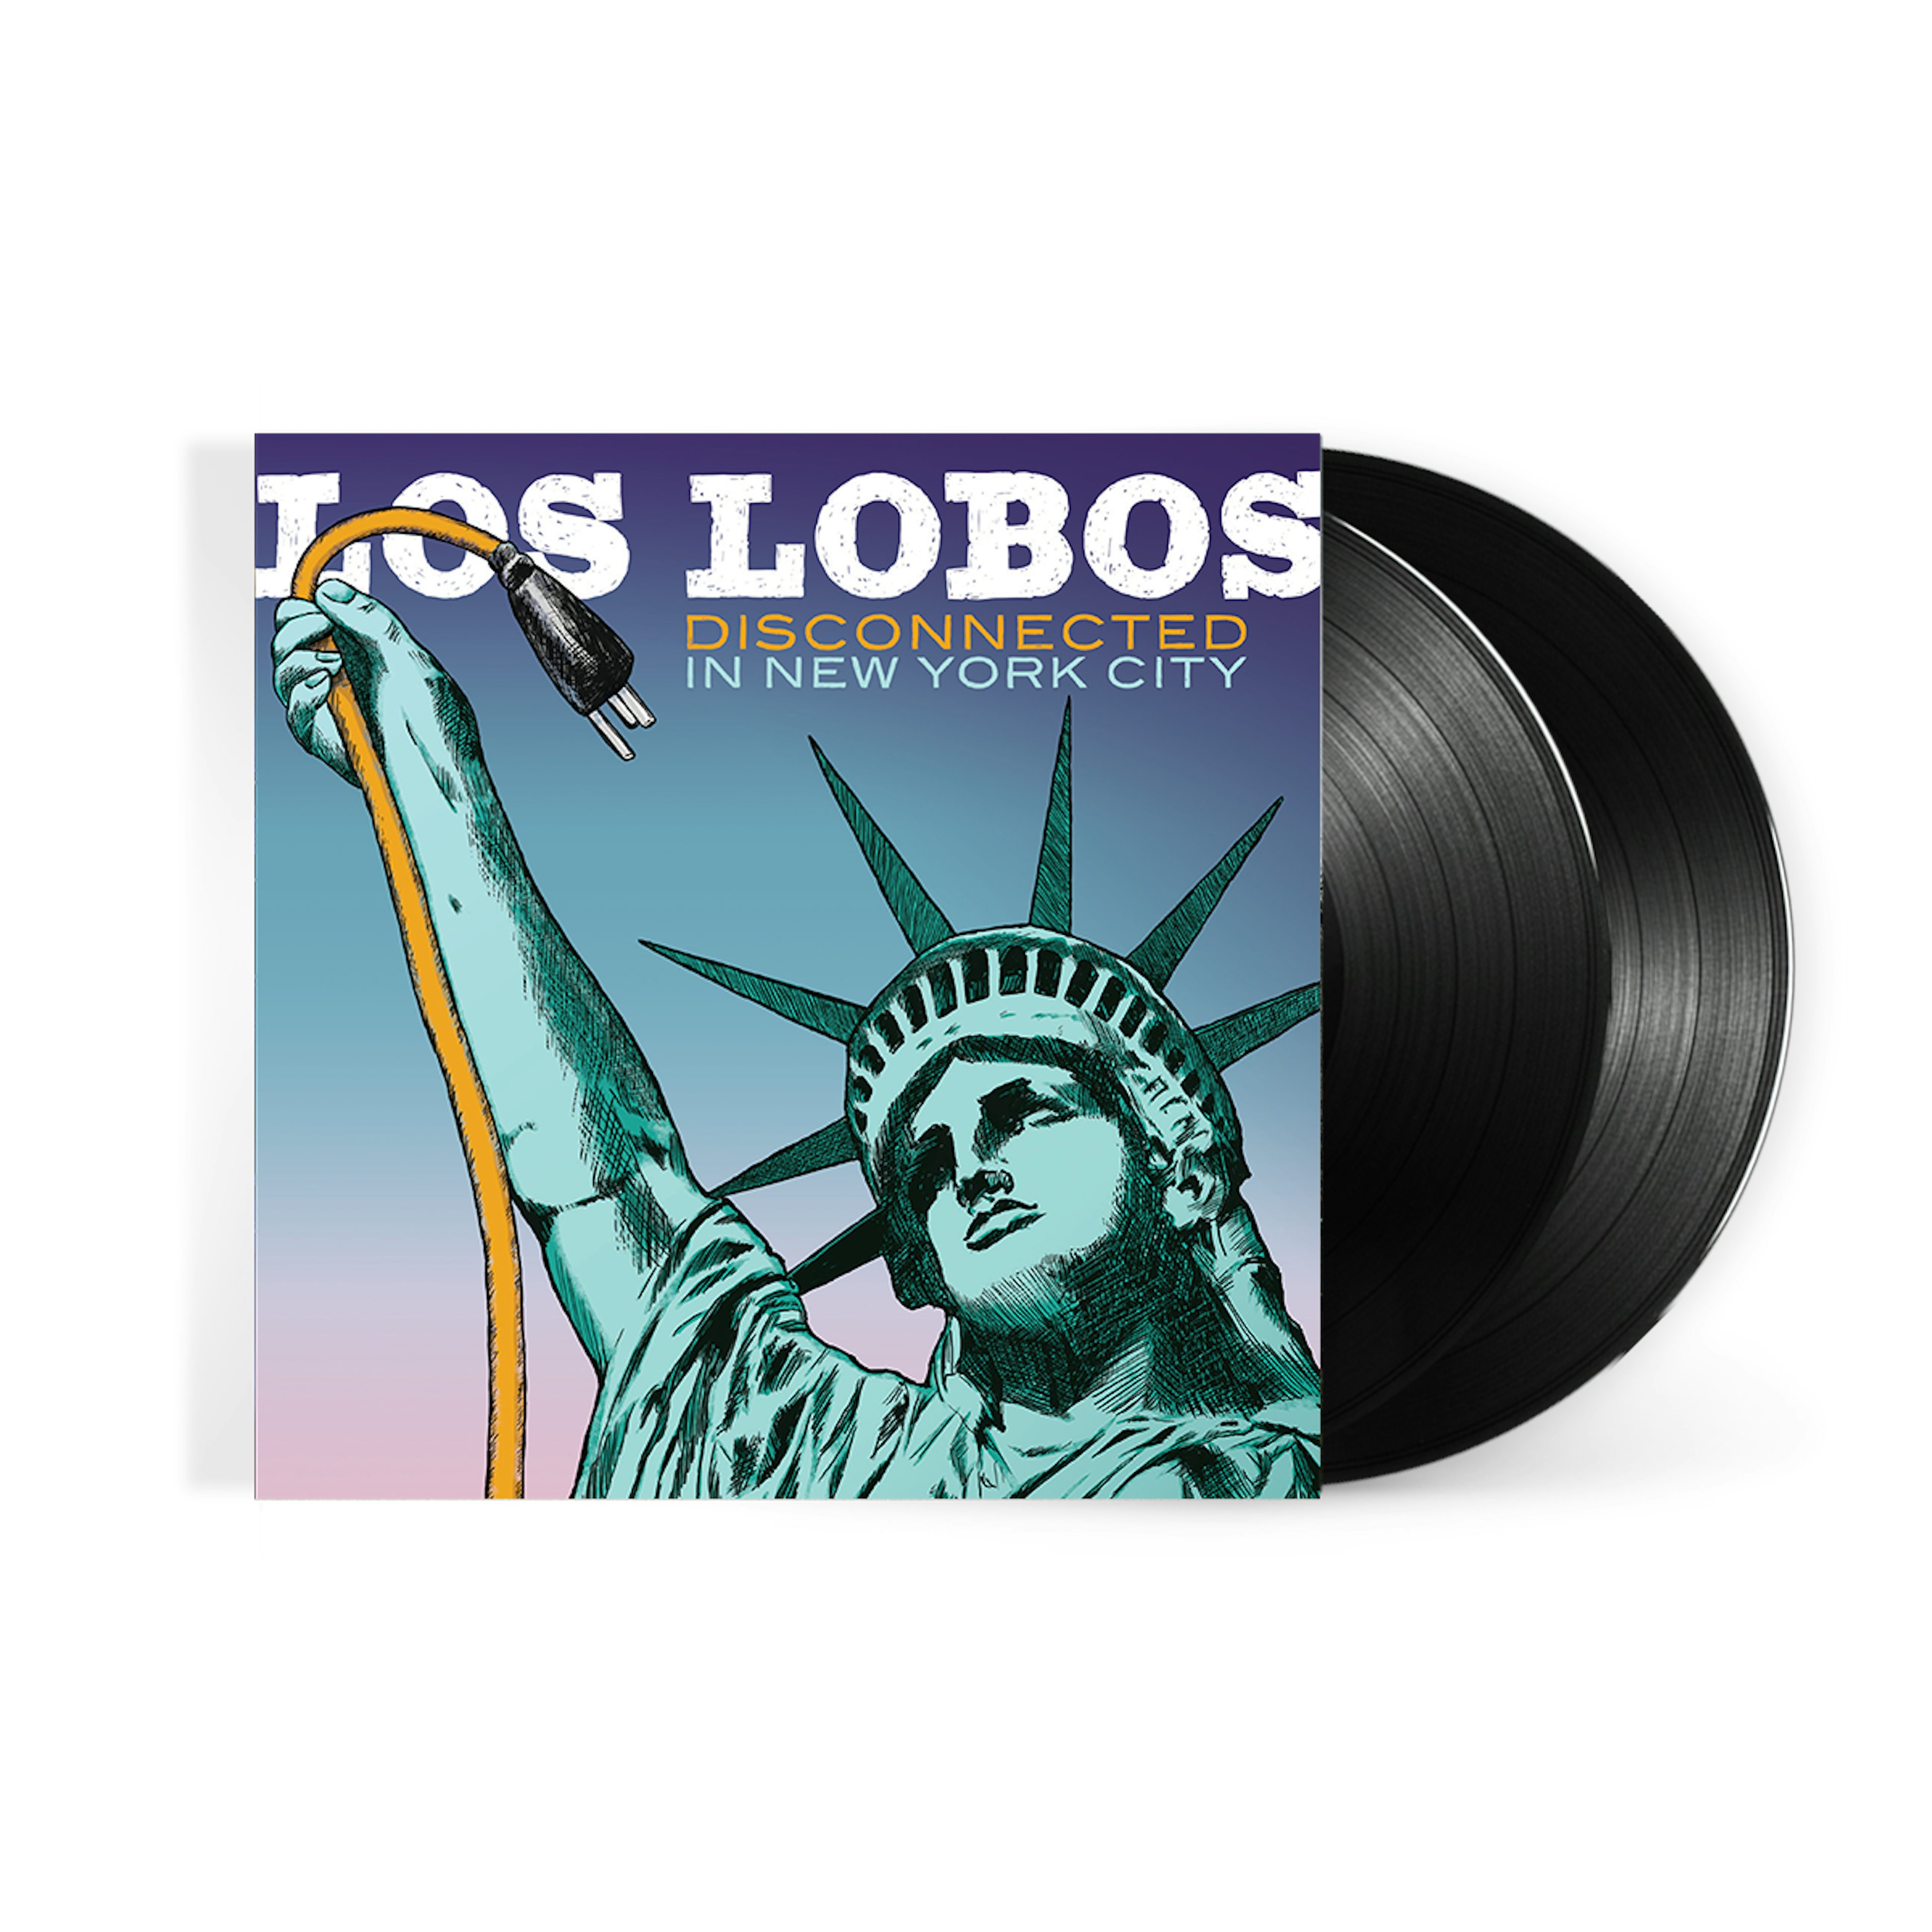 Los Lobos Disconnected In New York City (2-LP) (Vinyl)